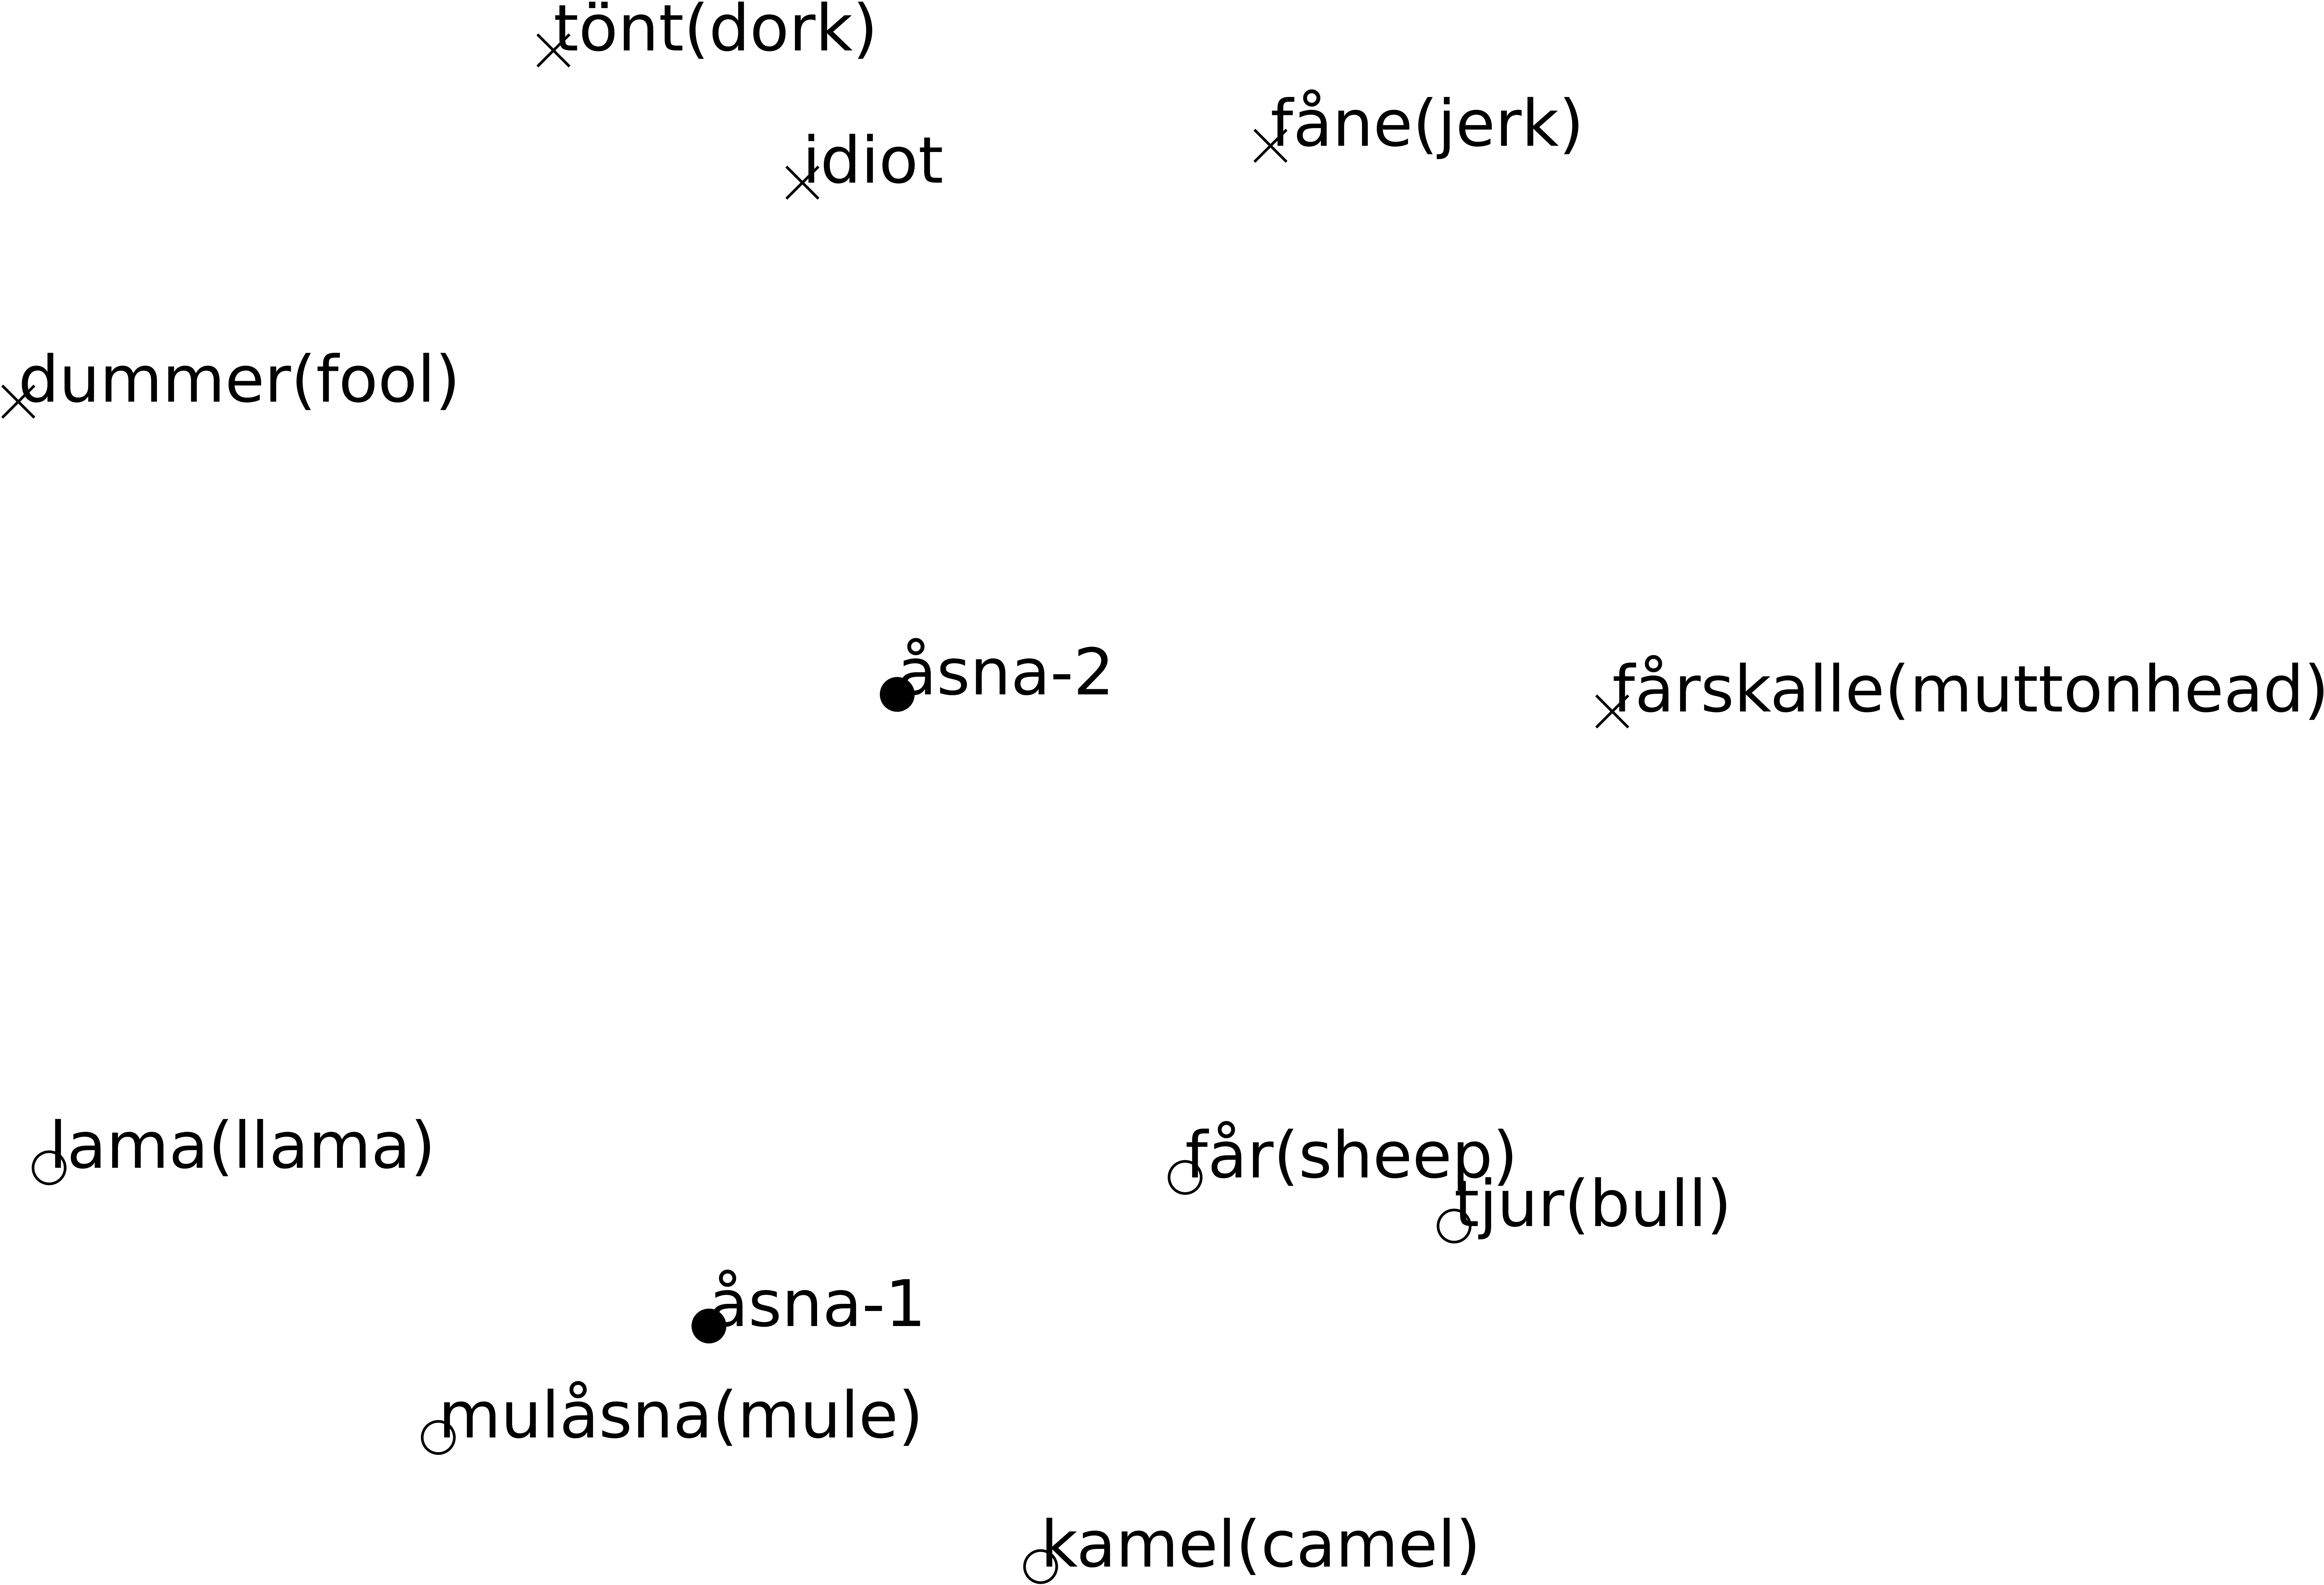 En ordbetydelsebaserad modell där åsna har två betydelser